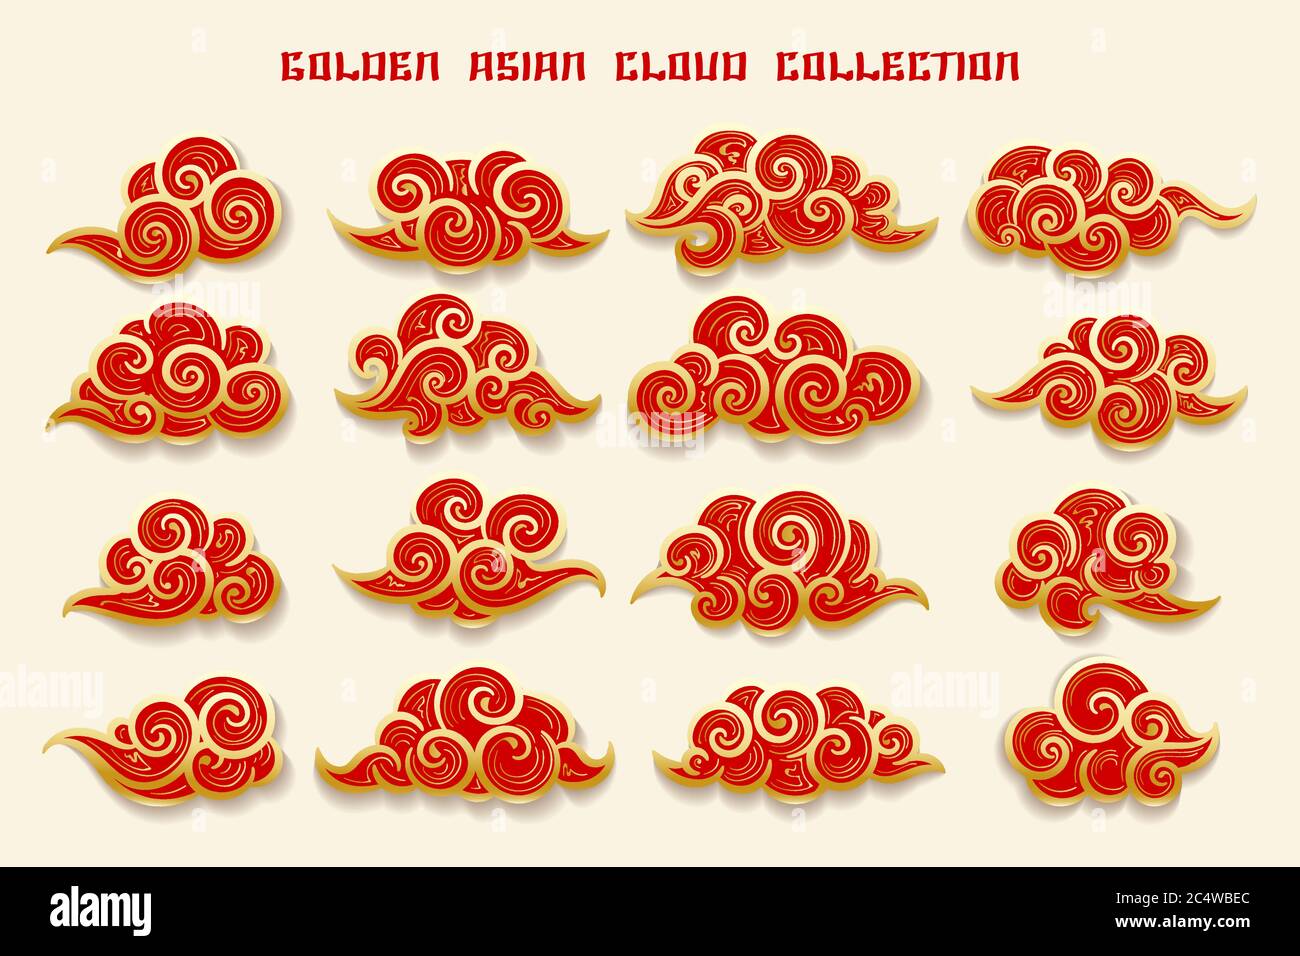 Collection de nuages rouges et dorés de style chinois. Illustration vectorielle. Illustration de Vecteur